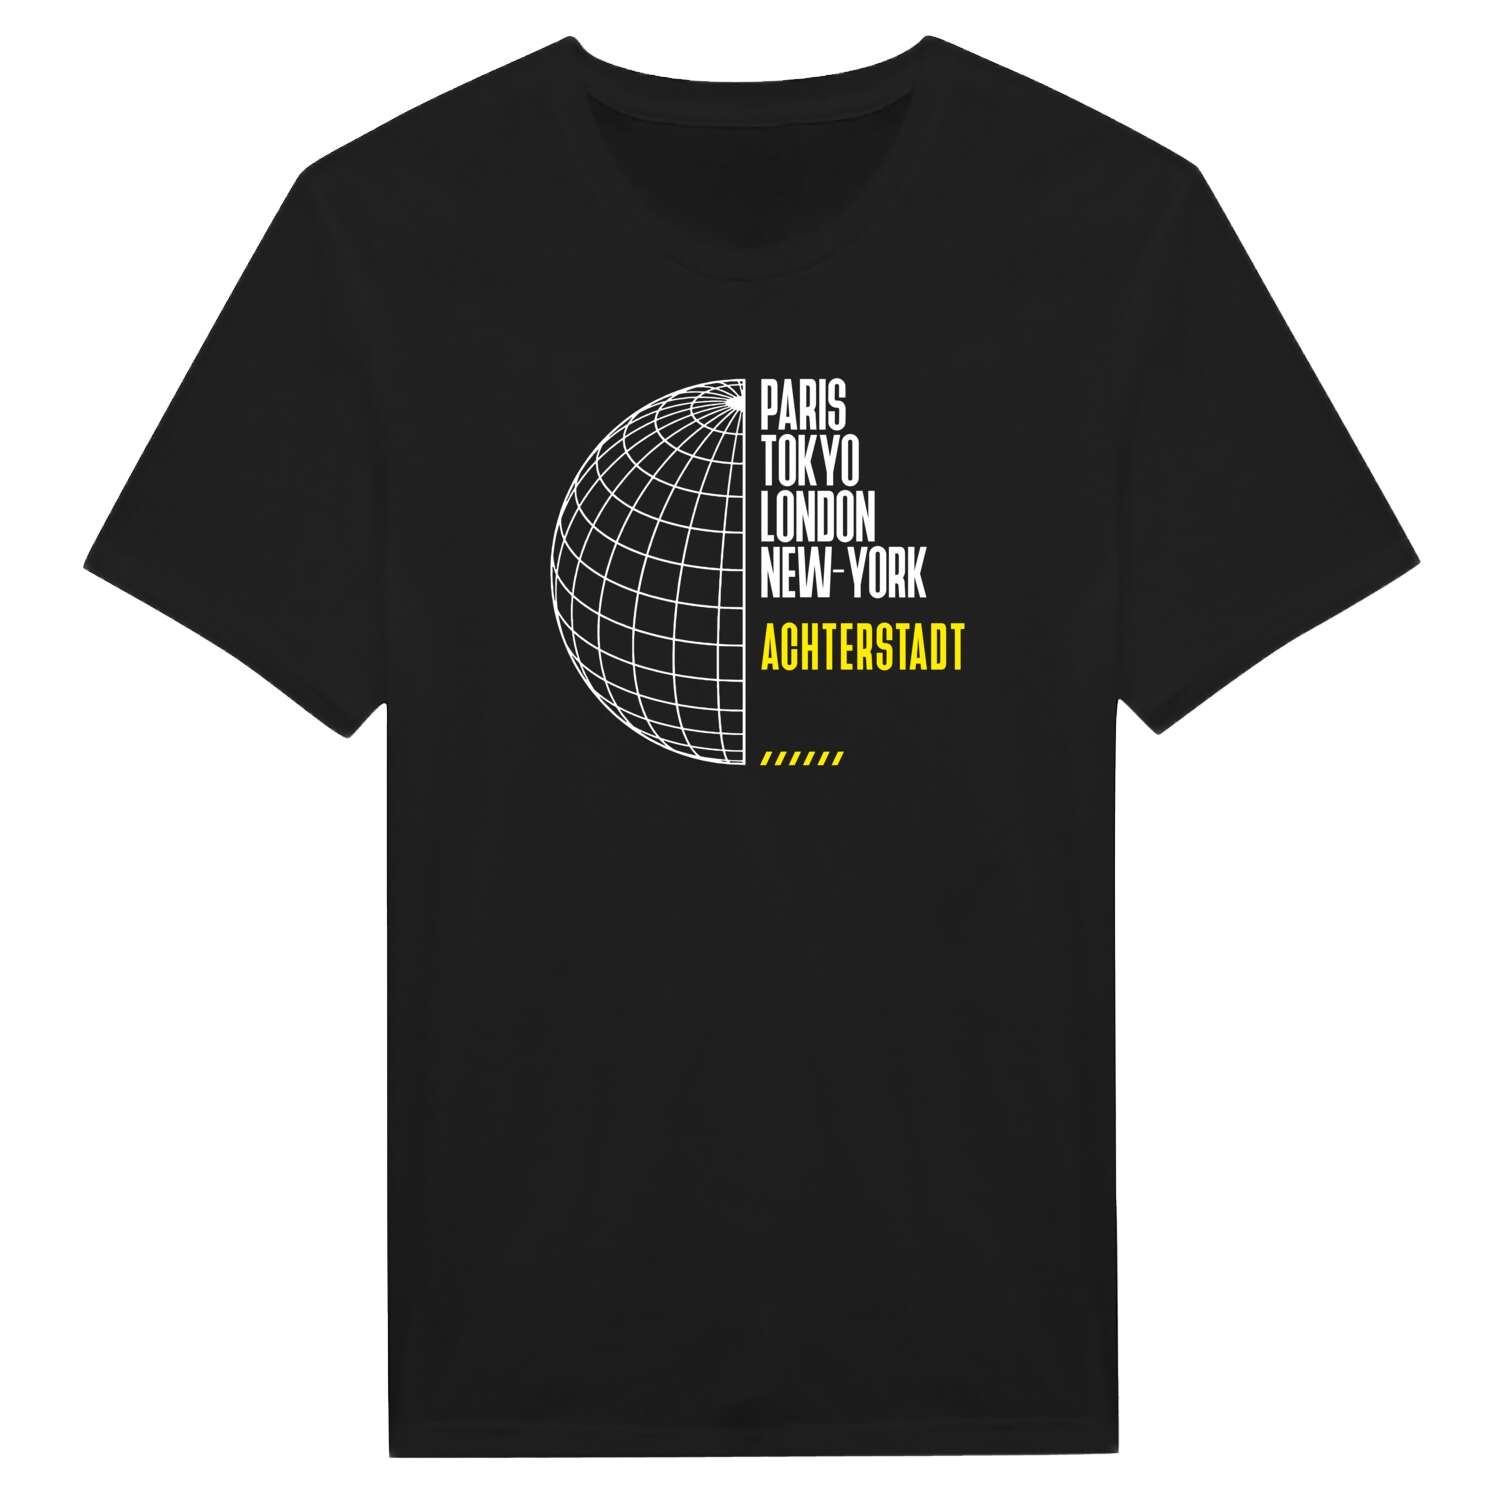 Achterstadt T-Shirt »Paris Tokyo London«